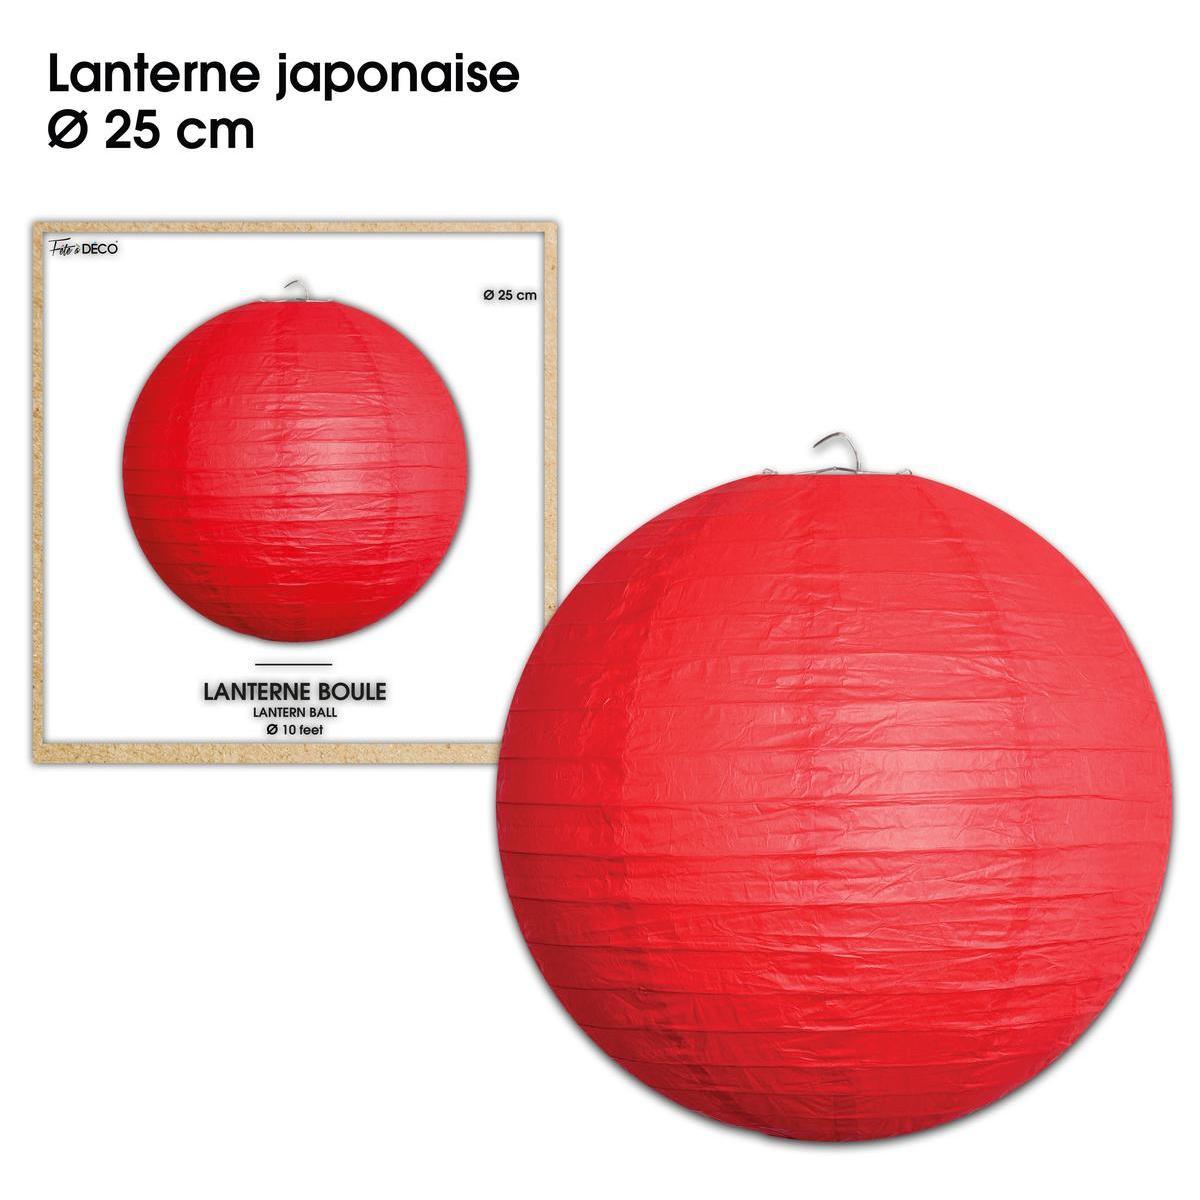 Lanterne japonaise ø 25 cm rouge